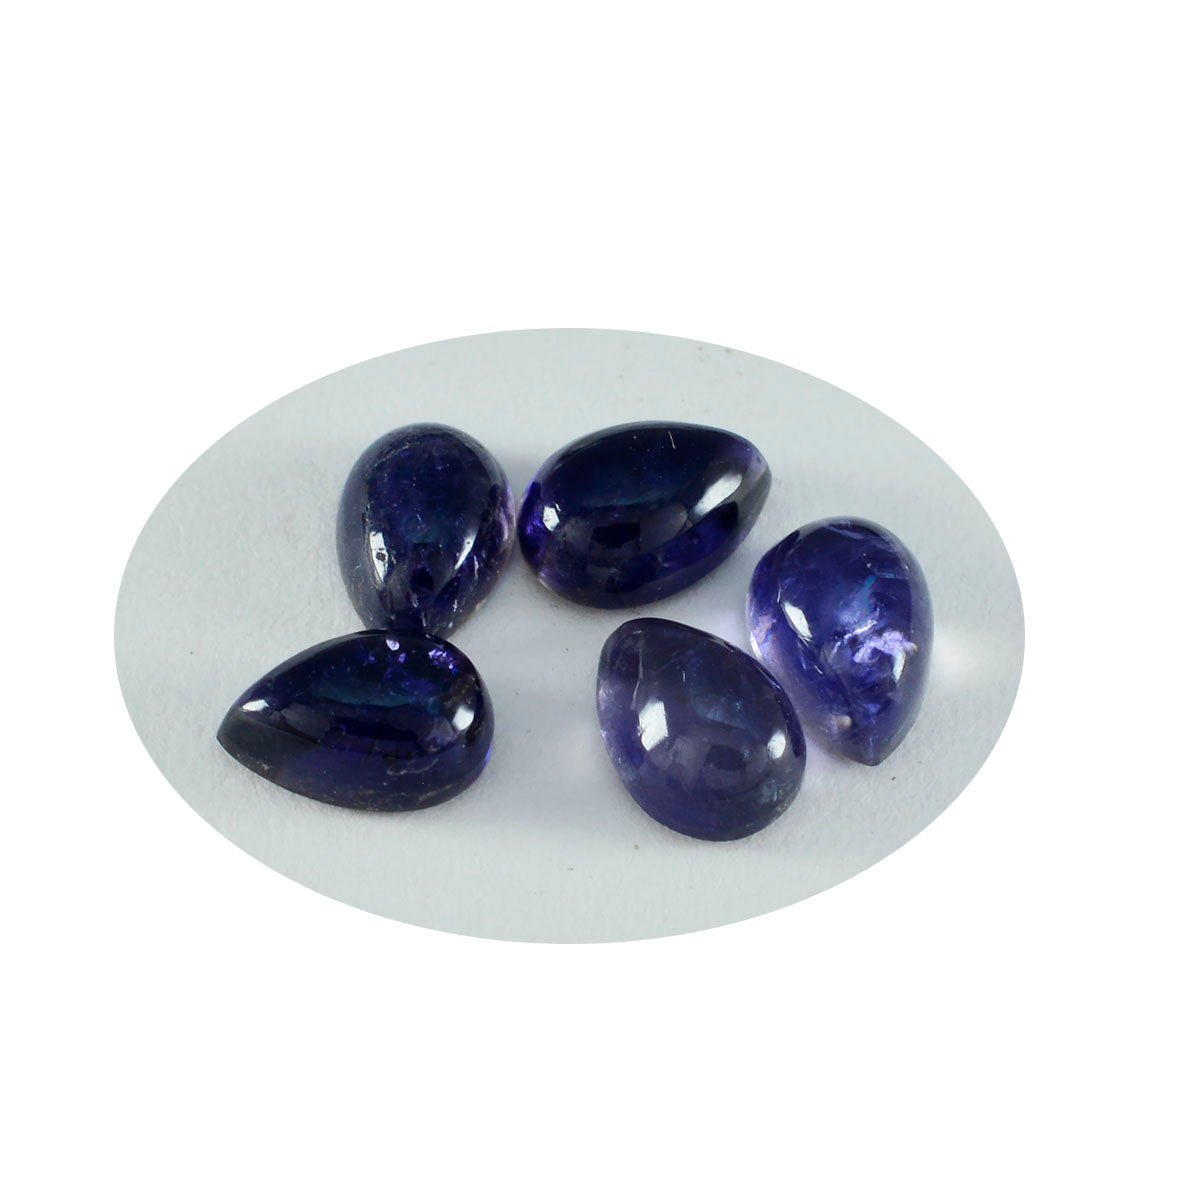 Riyogems 1PC blauwe ioliet cabochon 7x10 mm peervorm uitstekende kwaliteit losse edelsteen